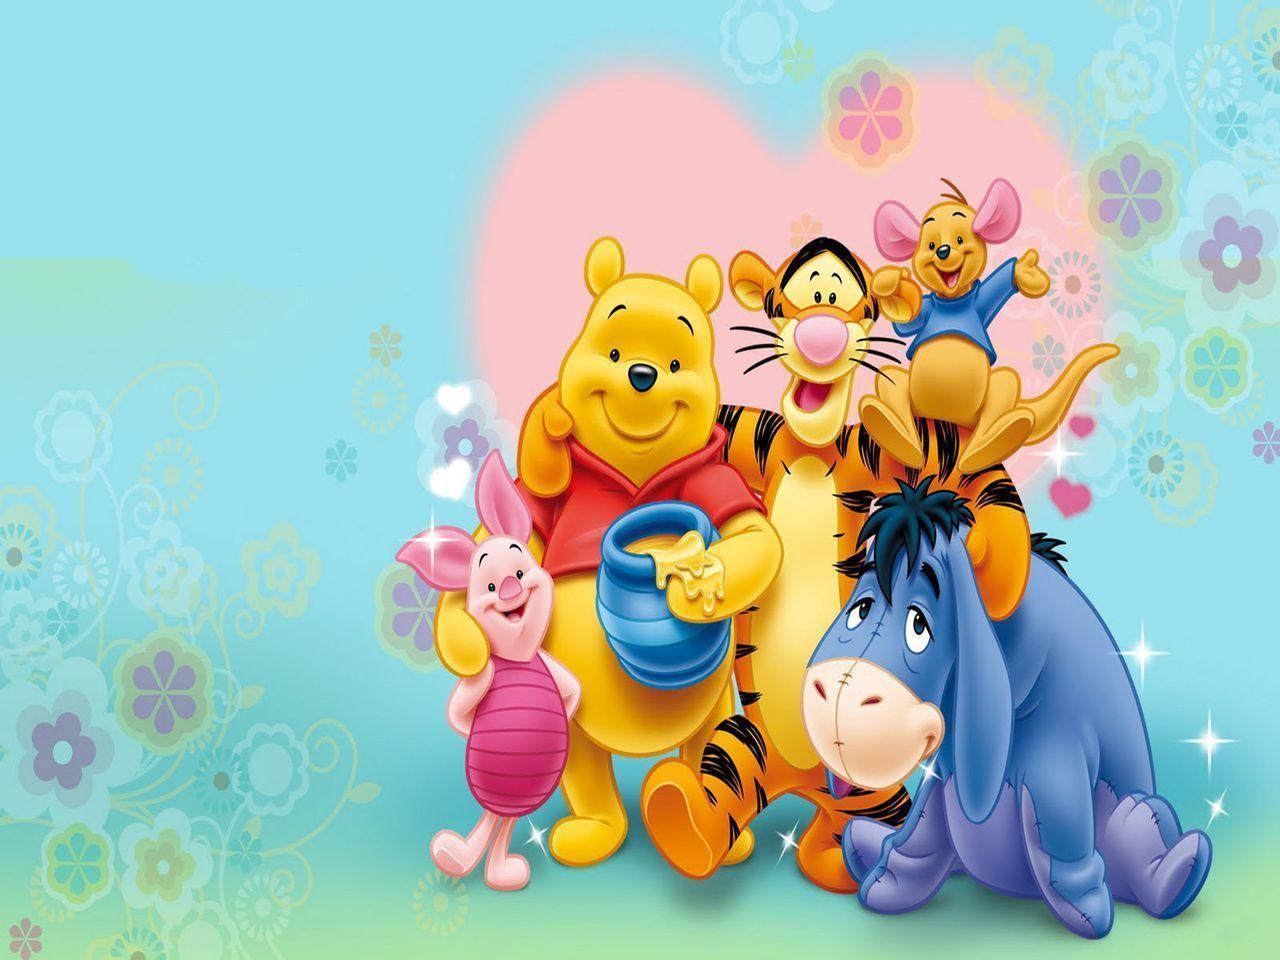 Wallpaper Desktop Winnie The Pooh Valentine S Day 1024 X 768 188